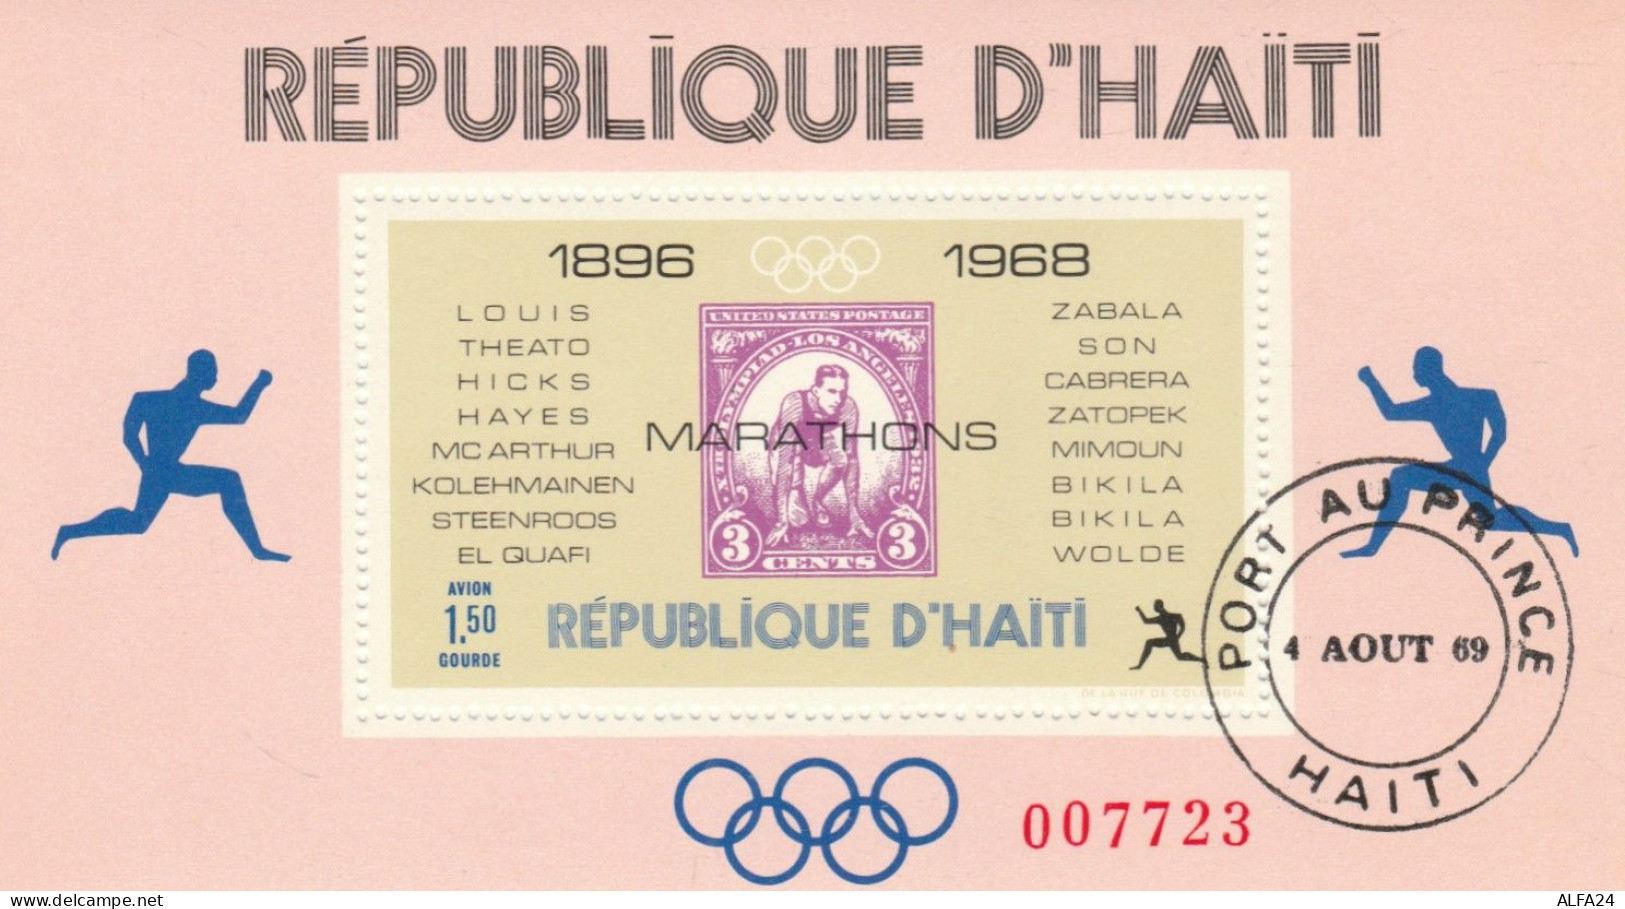 FOGLIETTO ANNULLATO HAITI 1968 (RY2639 - Haïti